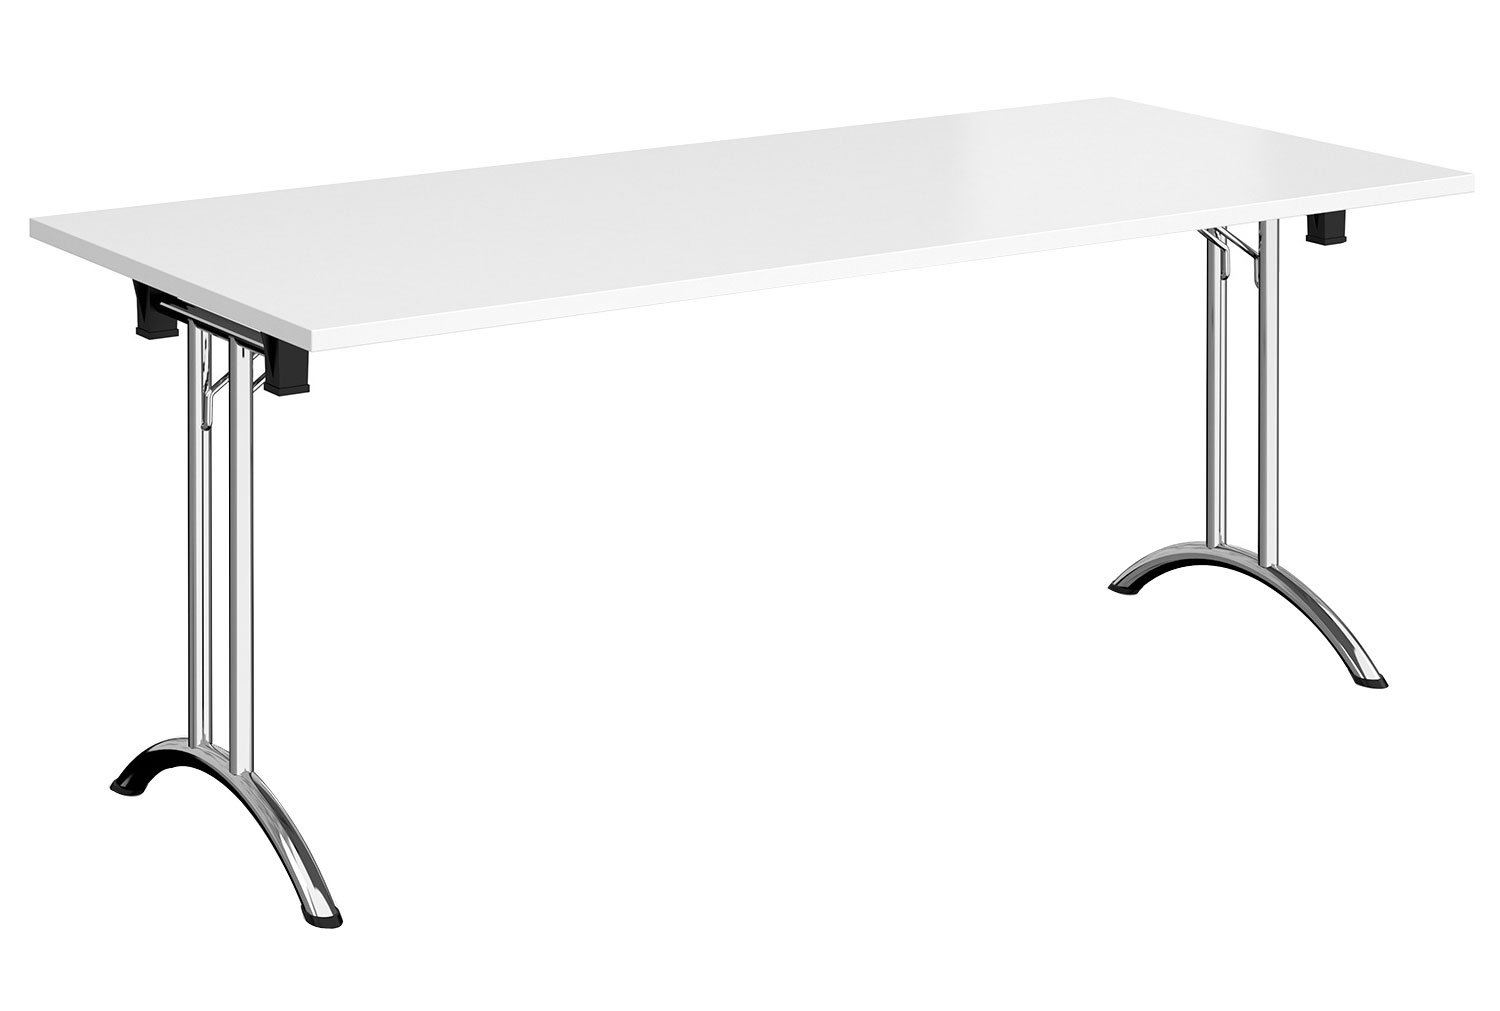 Zeeland Rectangular Folding Table, 180wx80dx73h (cm), Chrome Frame, White, Fully Installed